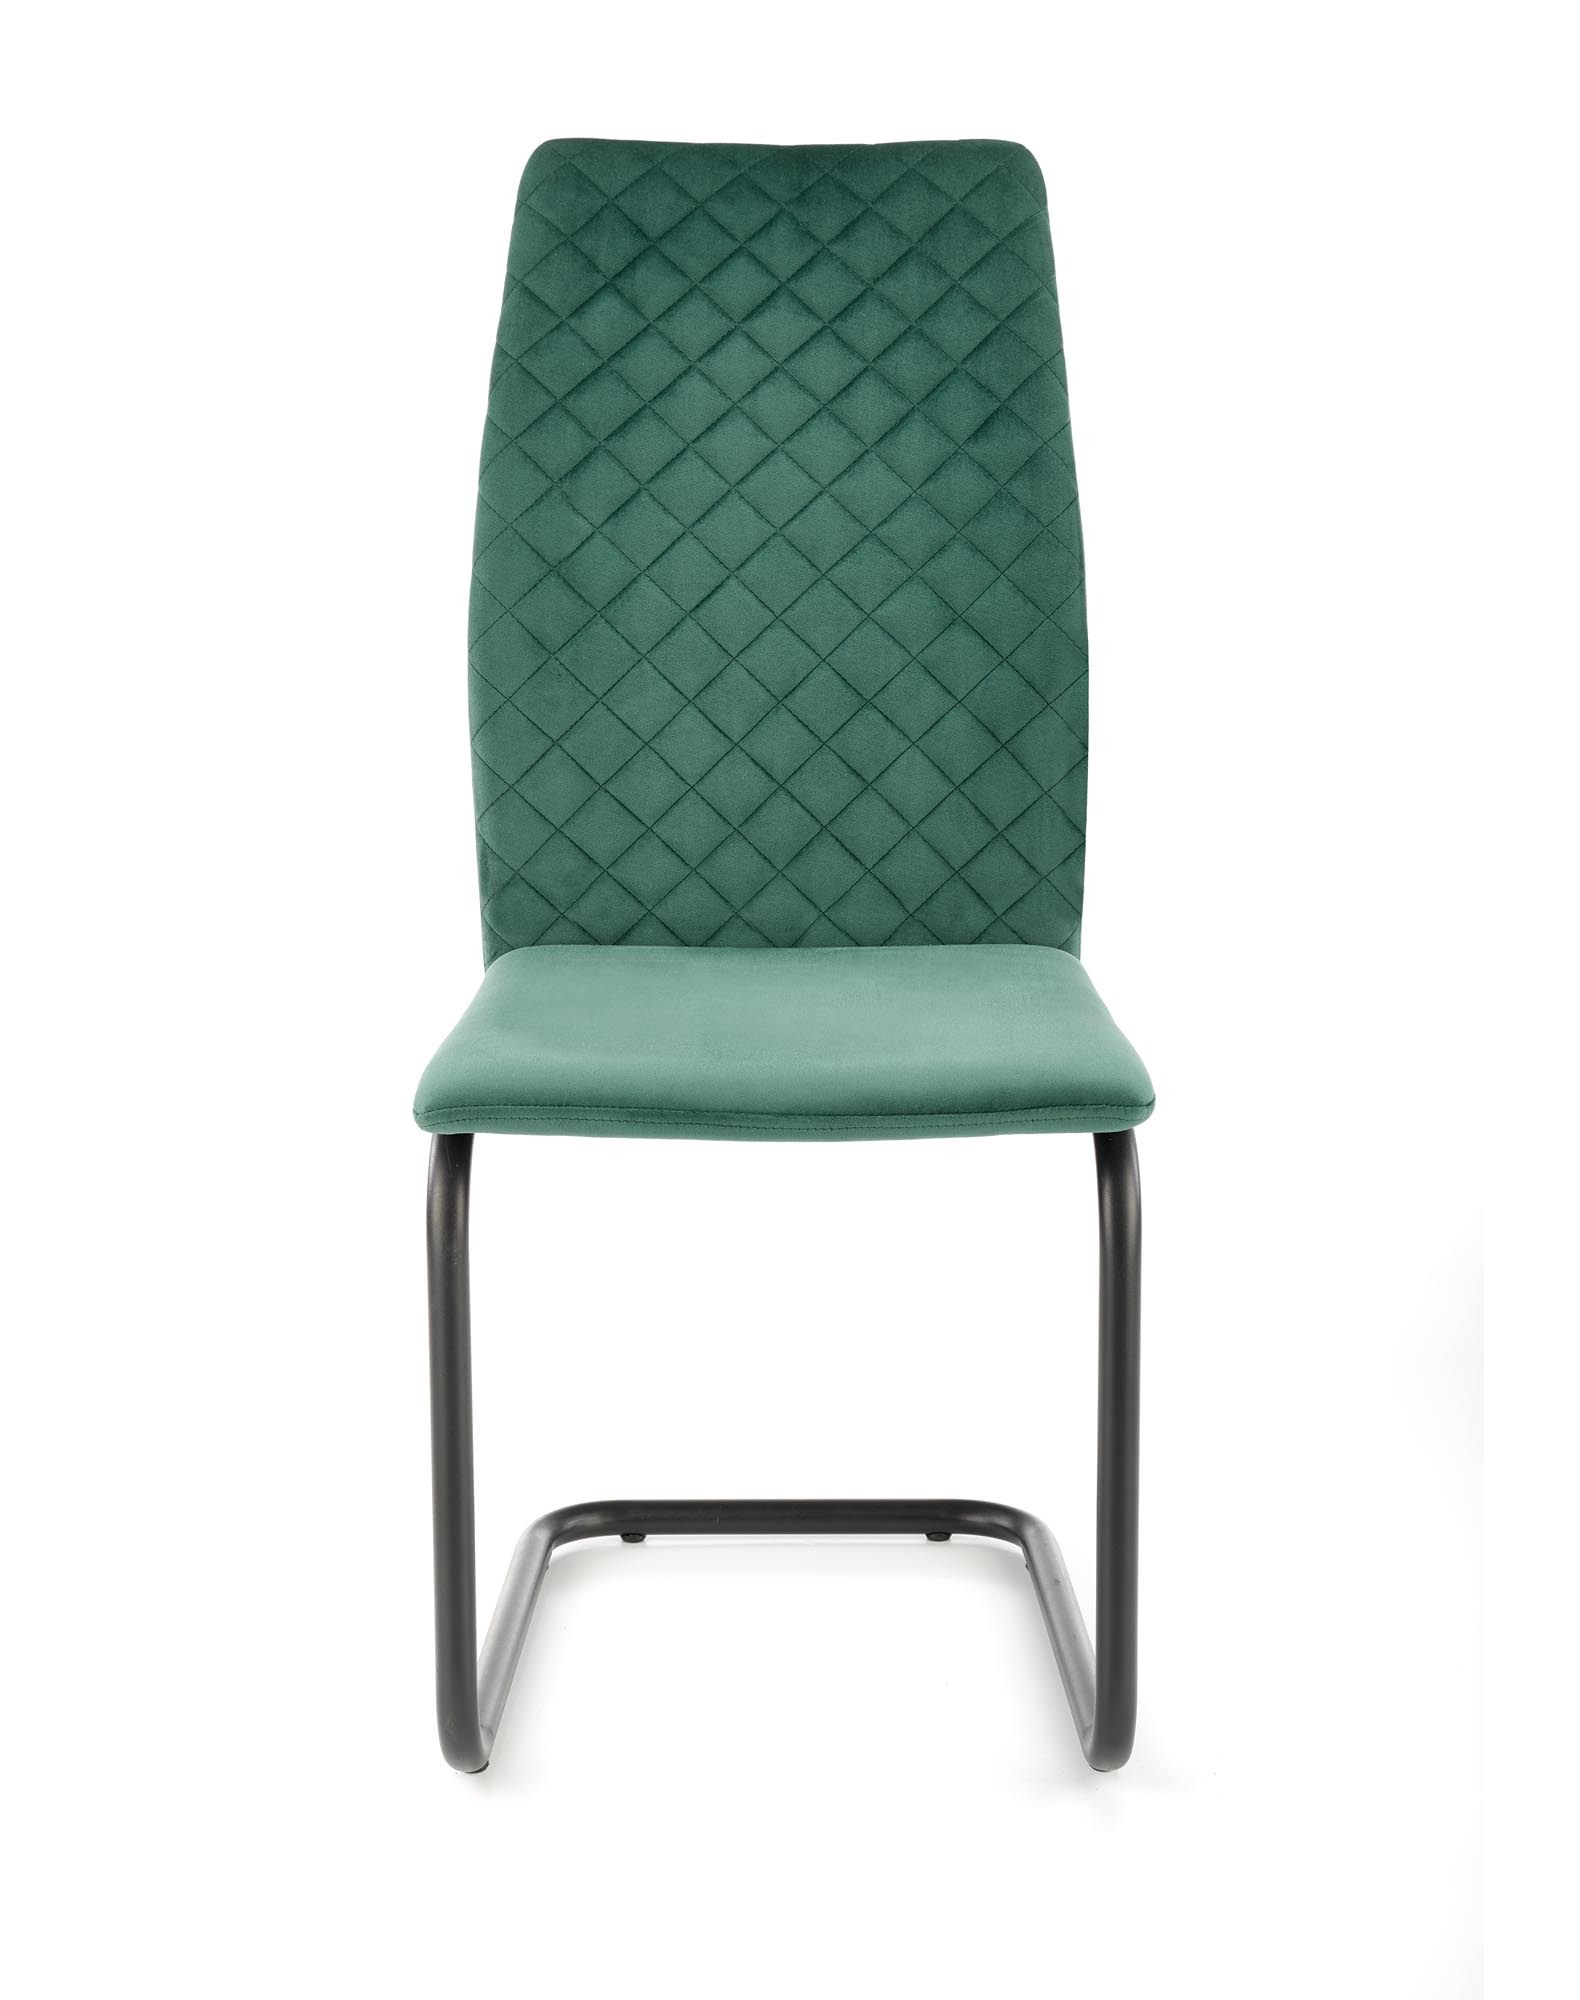 K444 krzesło ciemny zielony